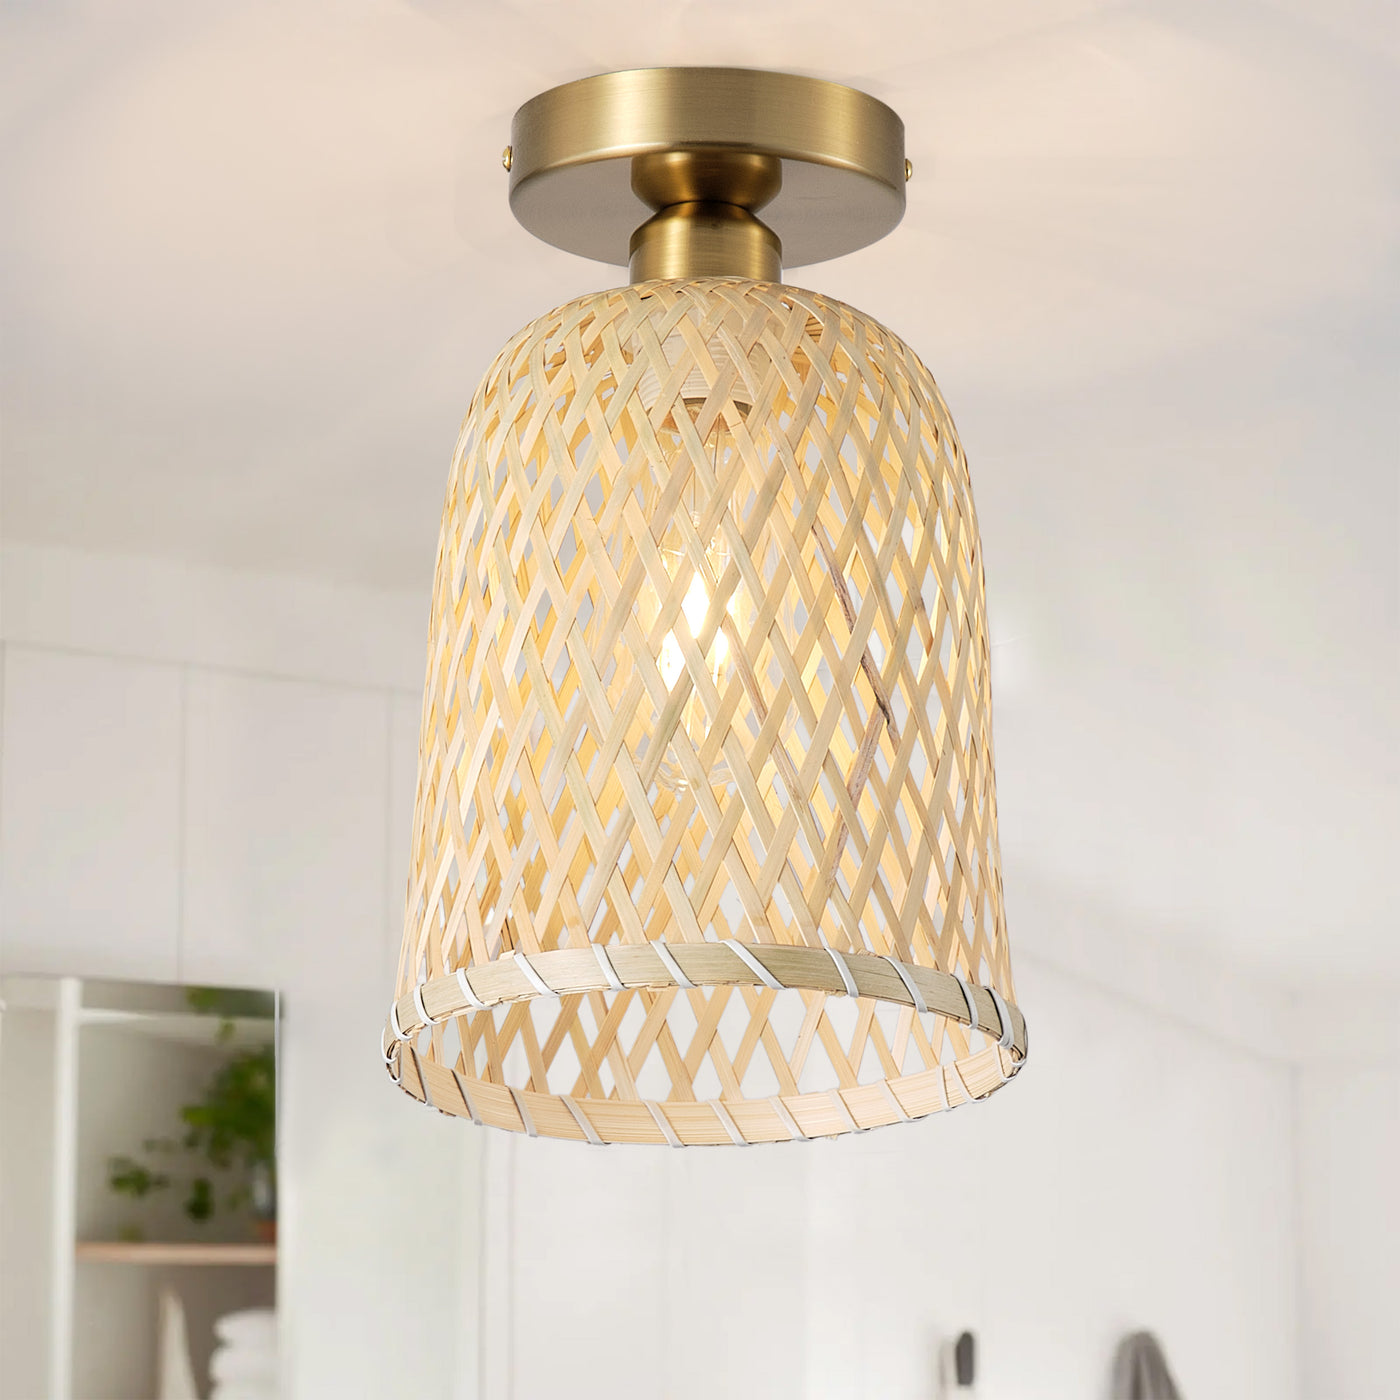 1-Light Bamboo Basket Shape Openwork Design Semi-Flush Mount Lighting